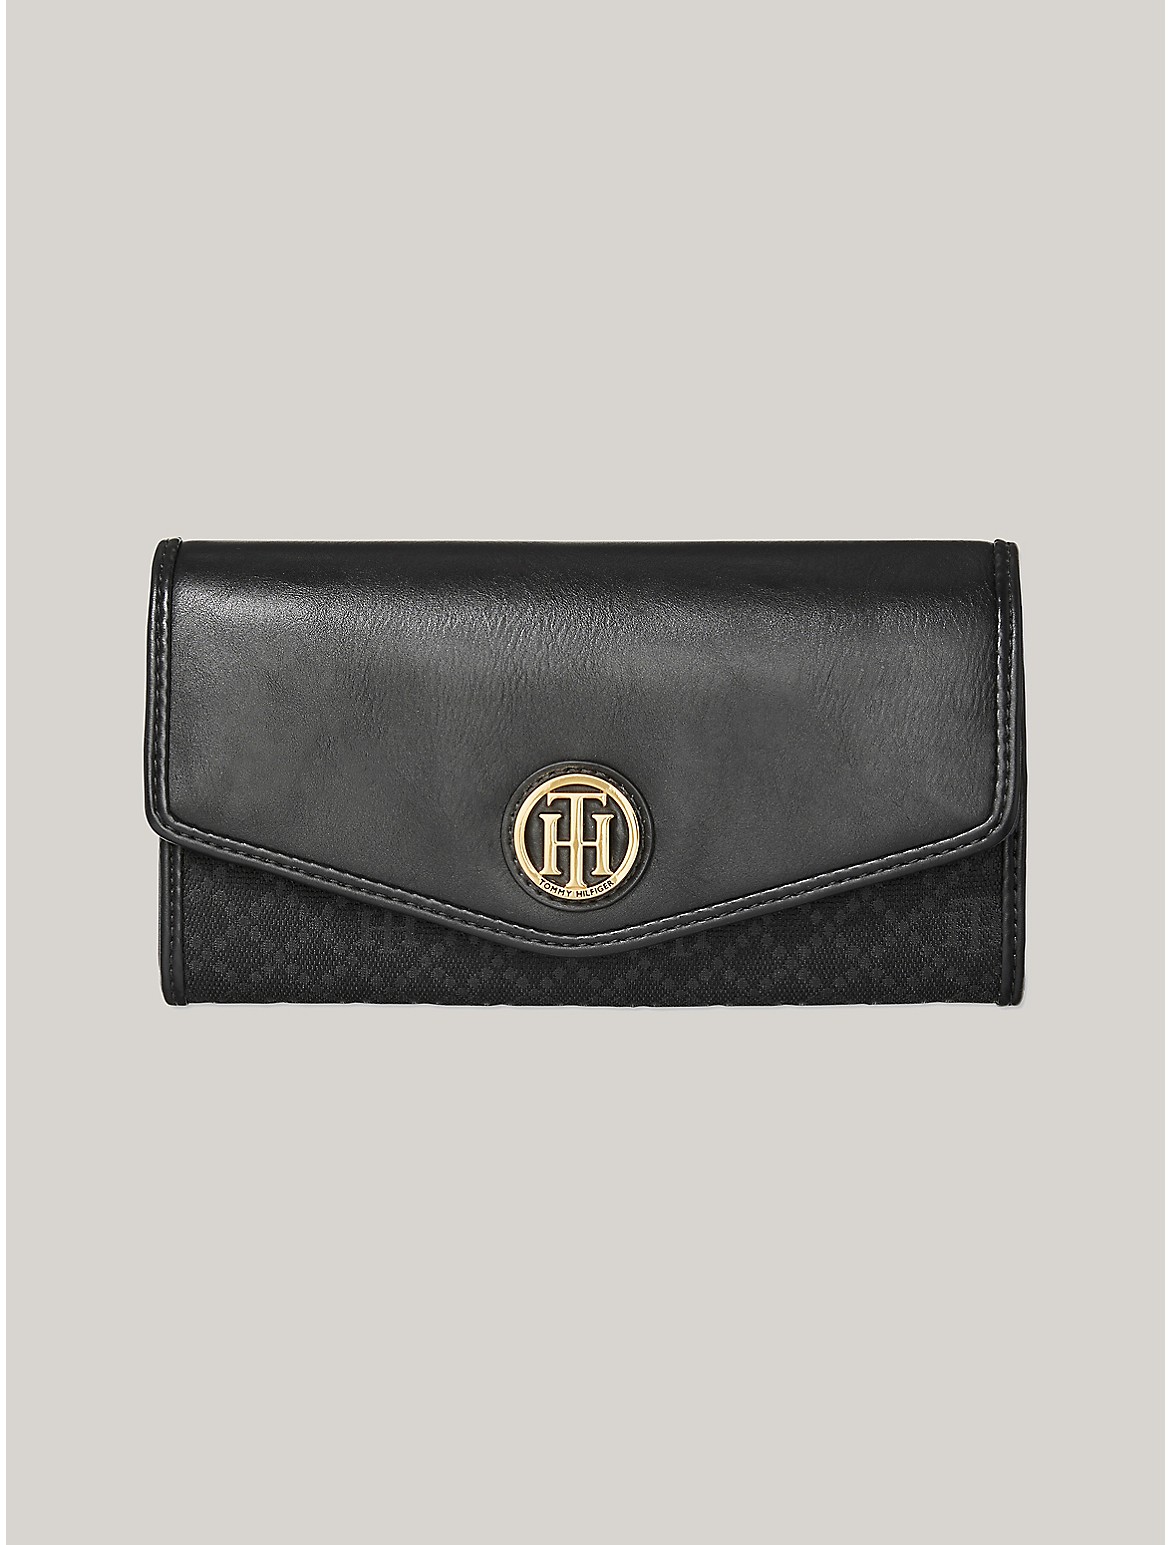 Tommy Hilfiger Women's TH Flap Wallet - Black